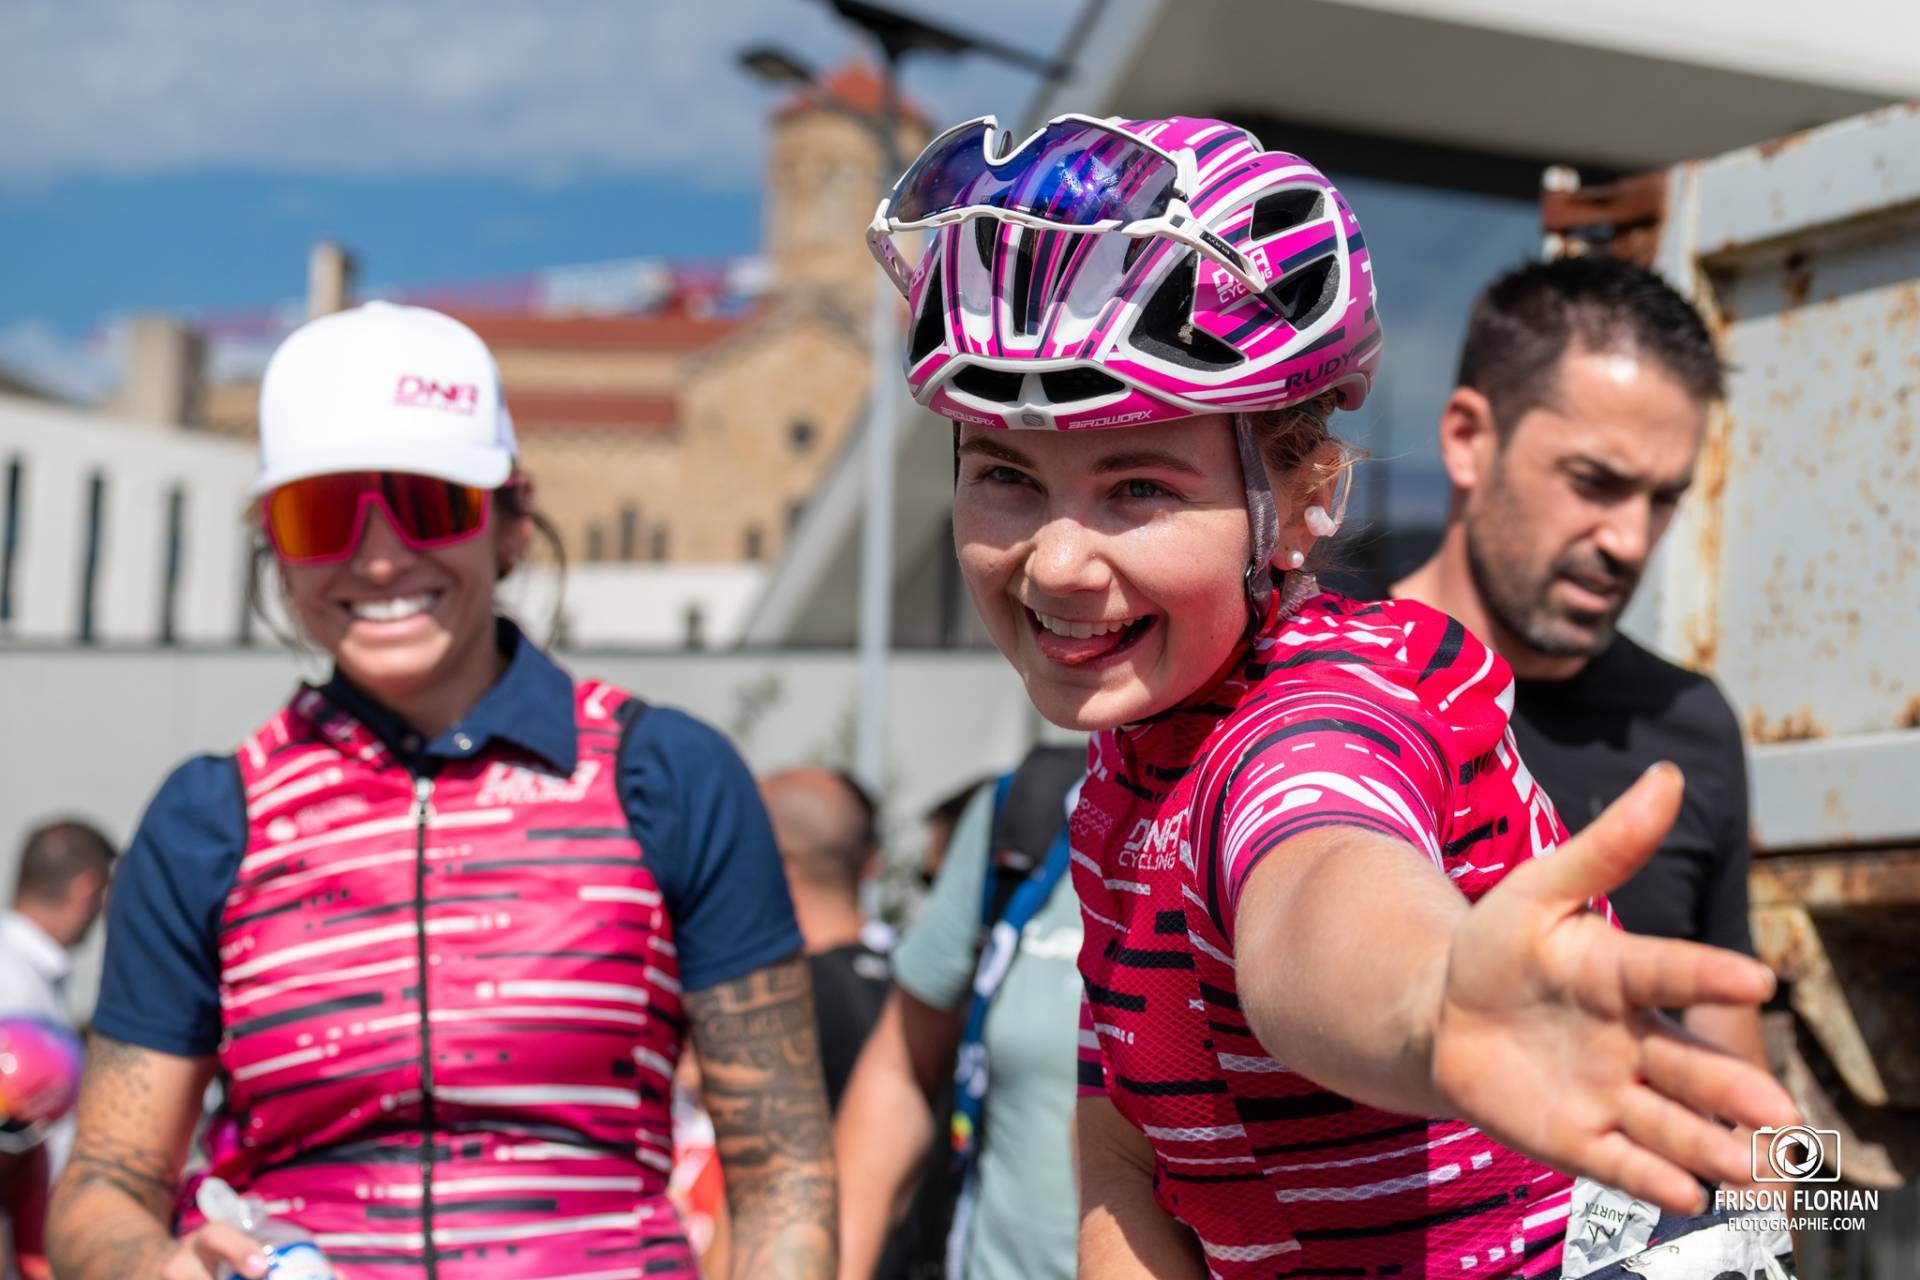 VAN DAM Sarah de l'équipe DNA Pro Cycling Team au Tour Cycliste International Féminin de l'Ardèche 2023